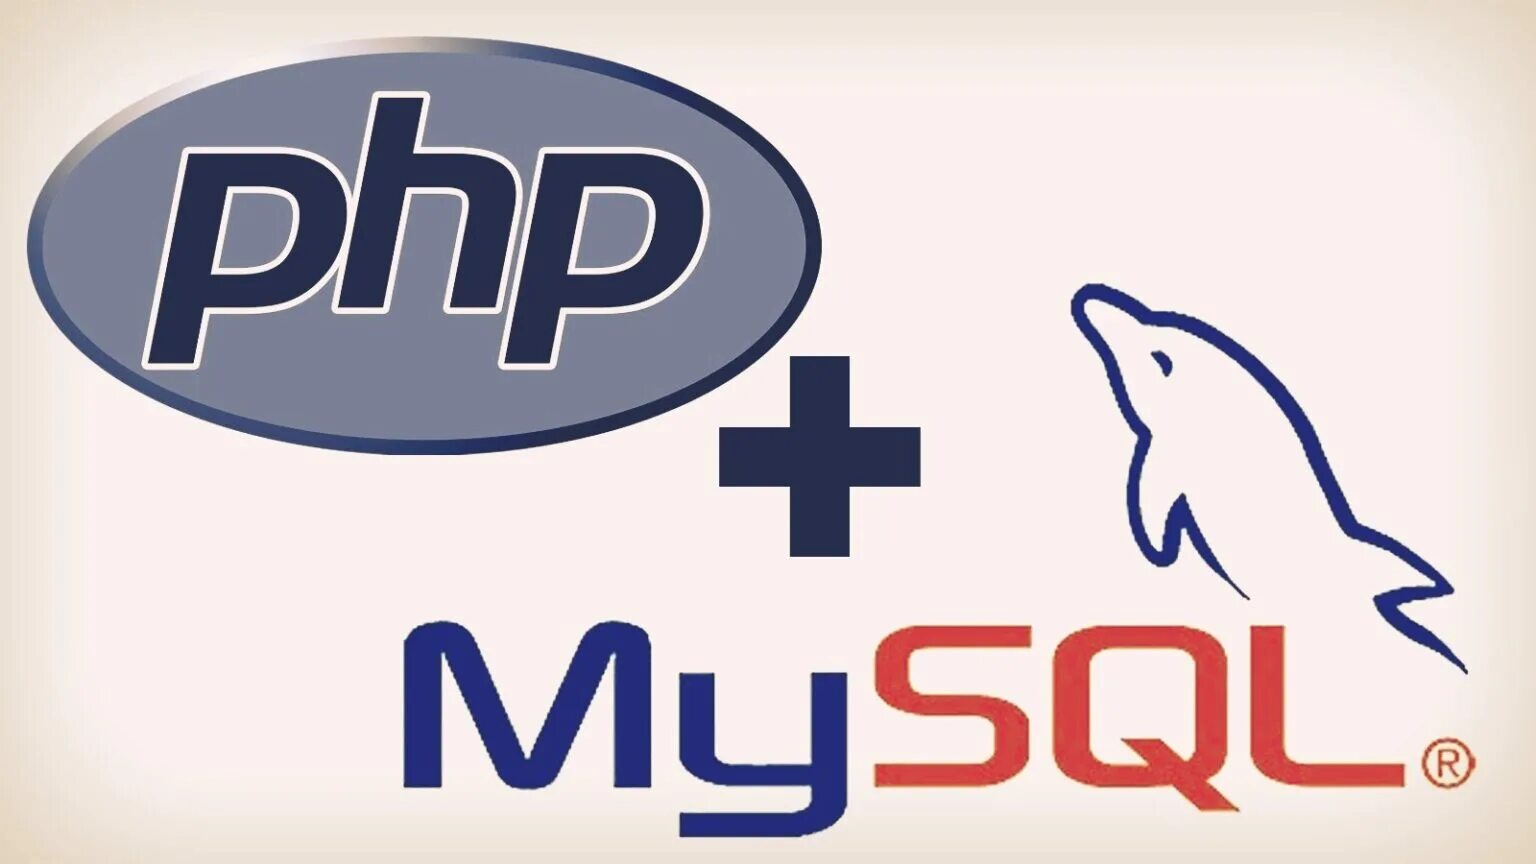 Php unique. Php. Php логотип. Php язык программирования. Php картинка.